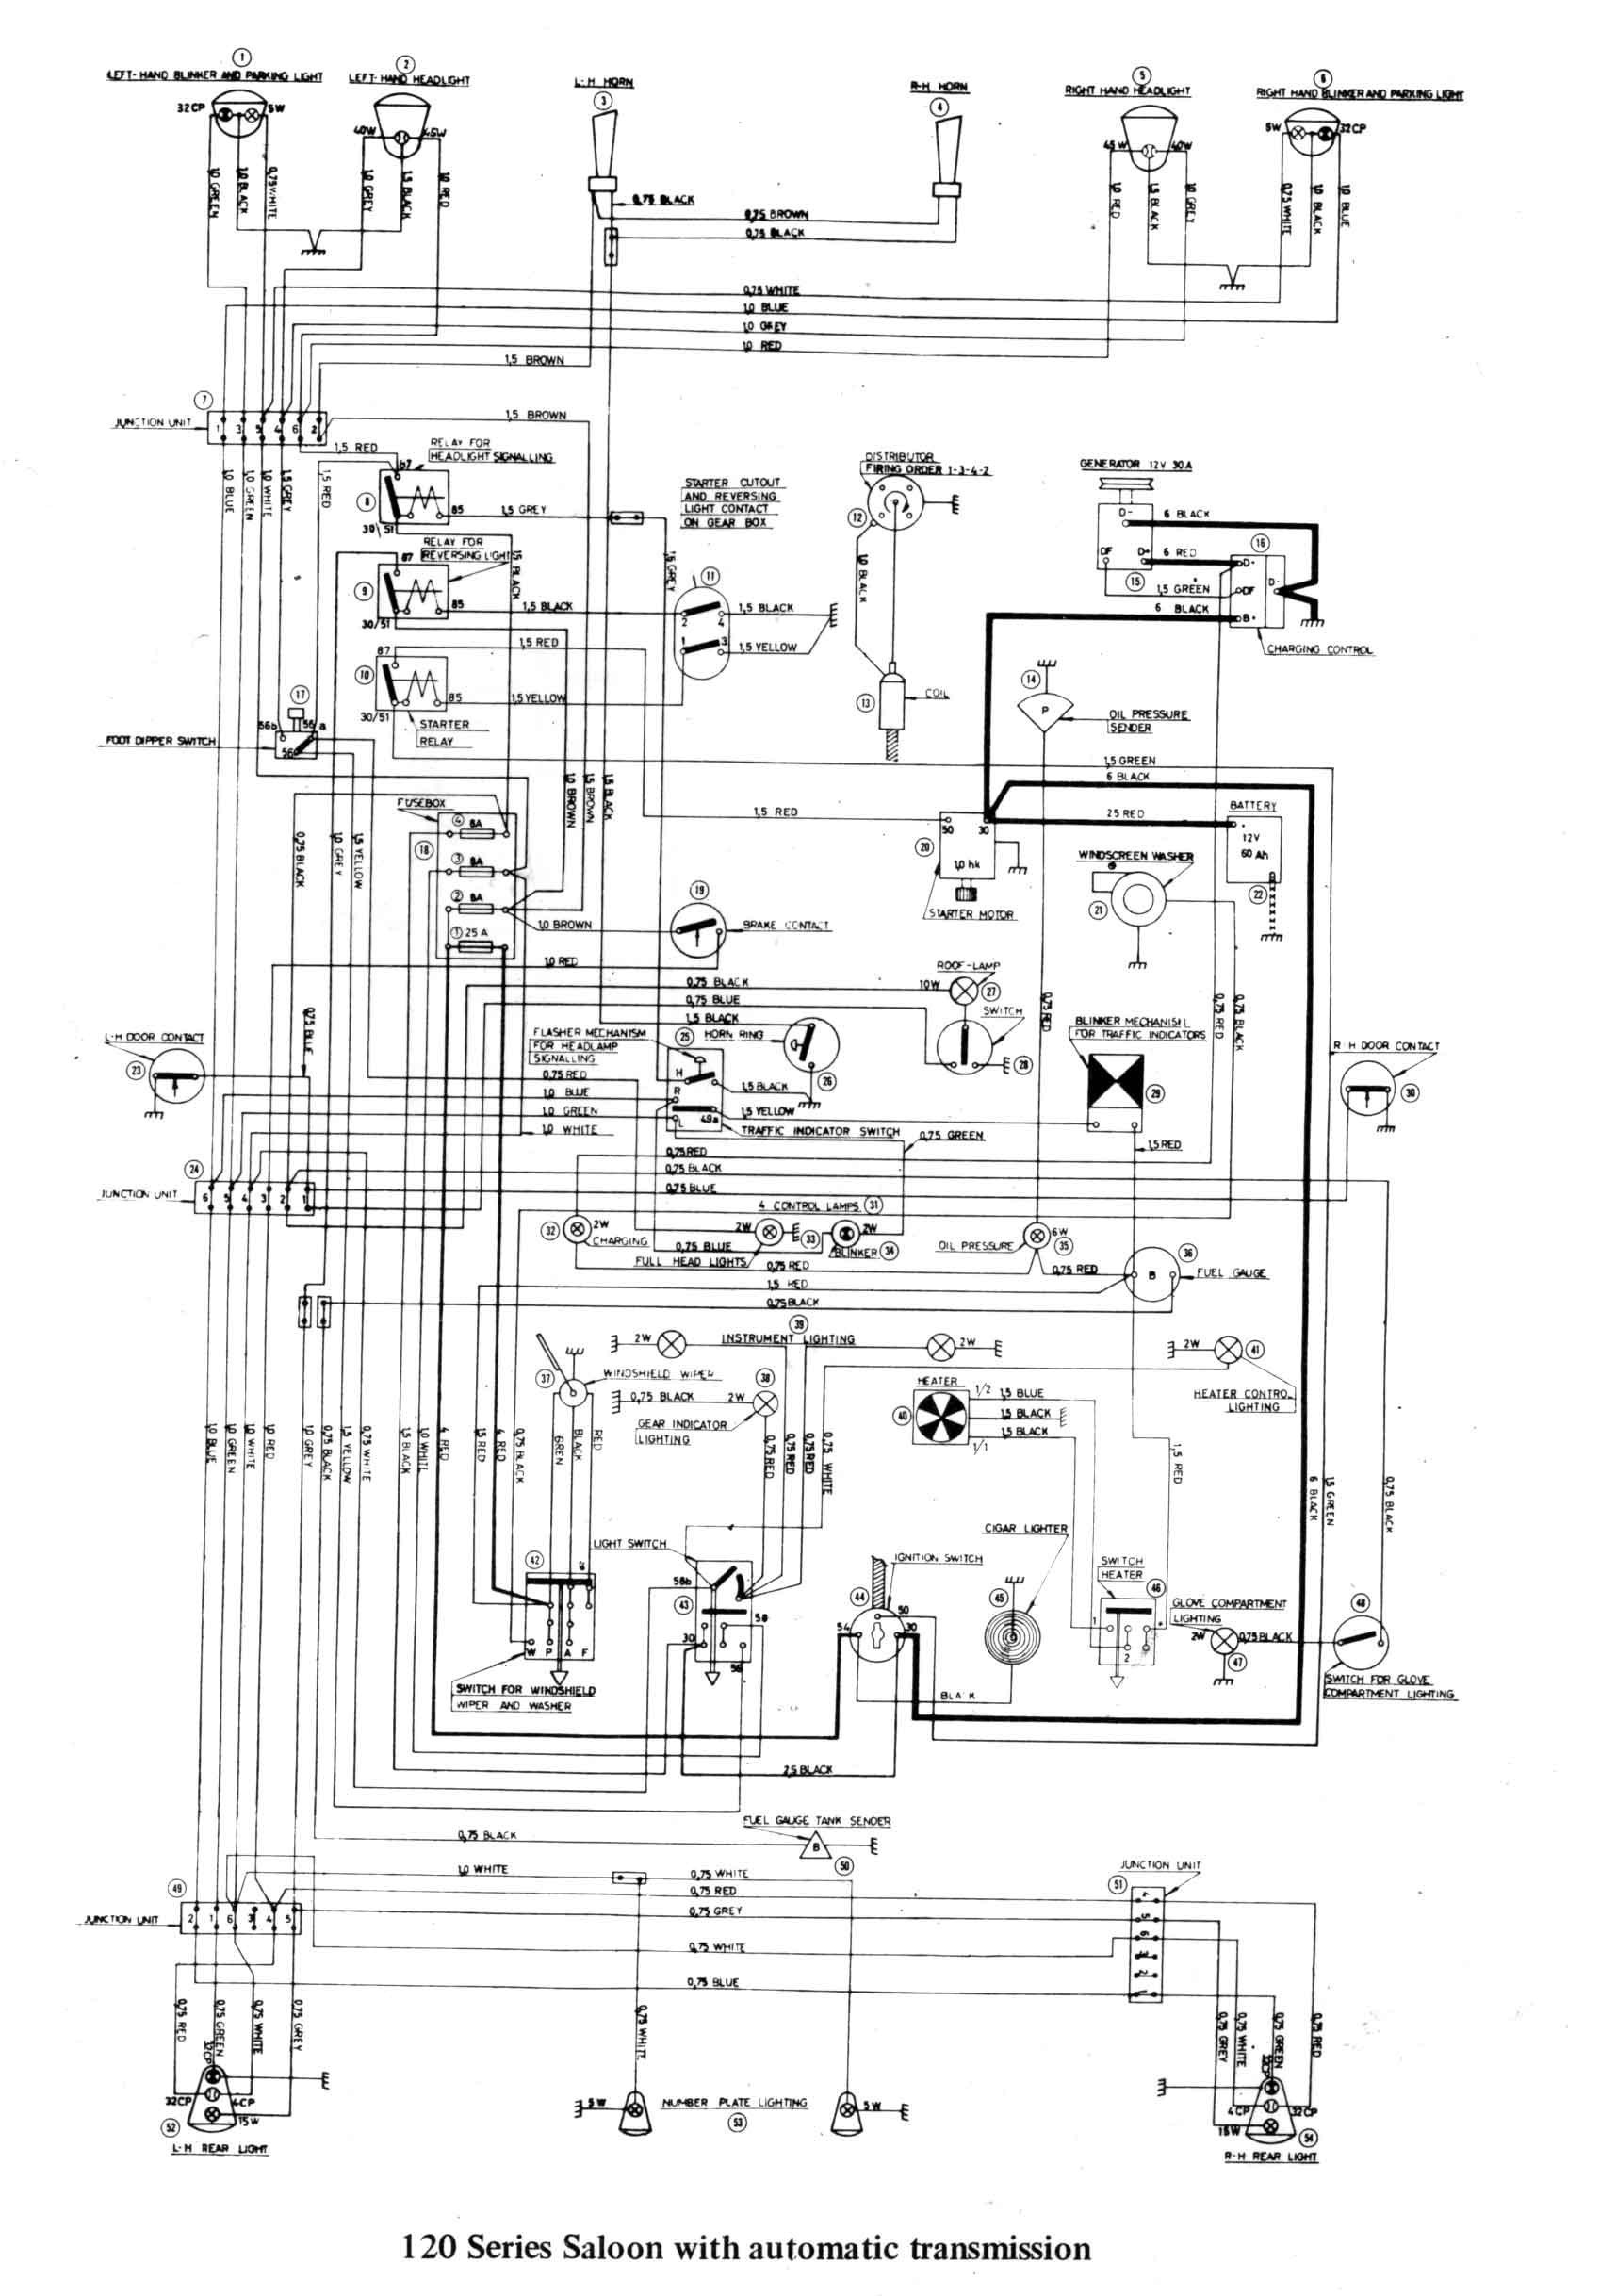 Oil Pressure Gauge Wiring Diagram Simple Wiring Diagram Electric Oil Pressure Gauge Best Sw Em Od